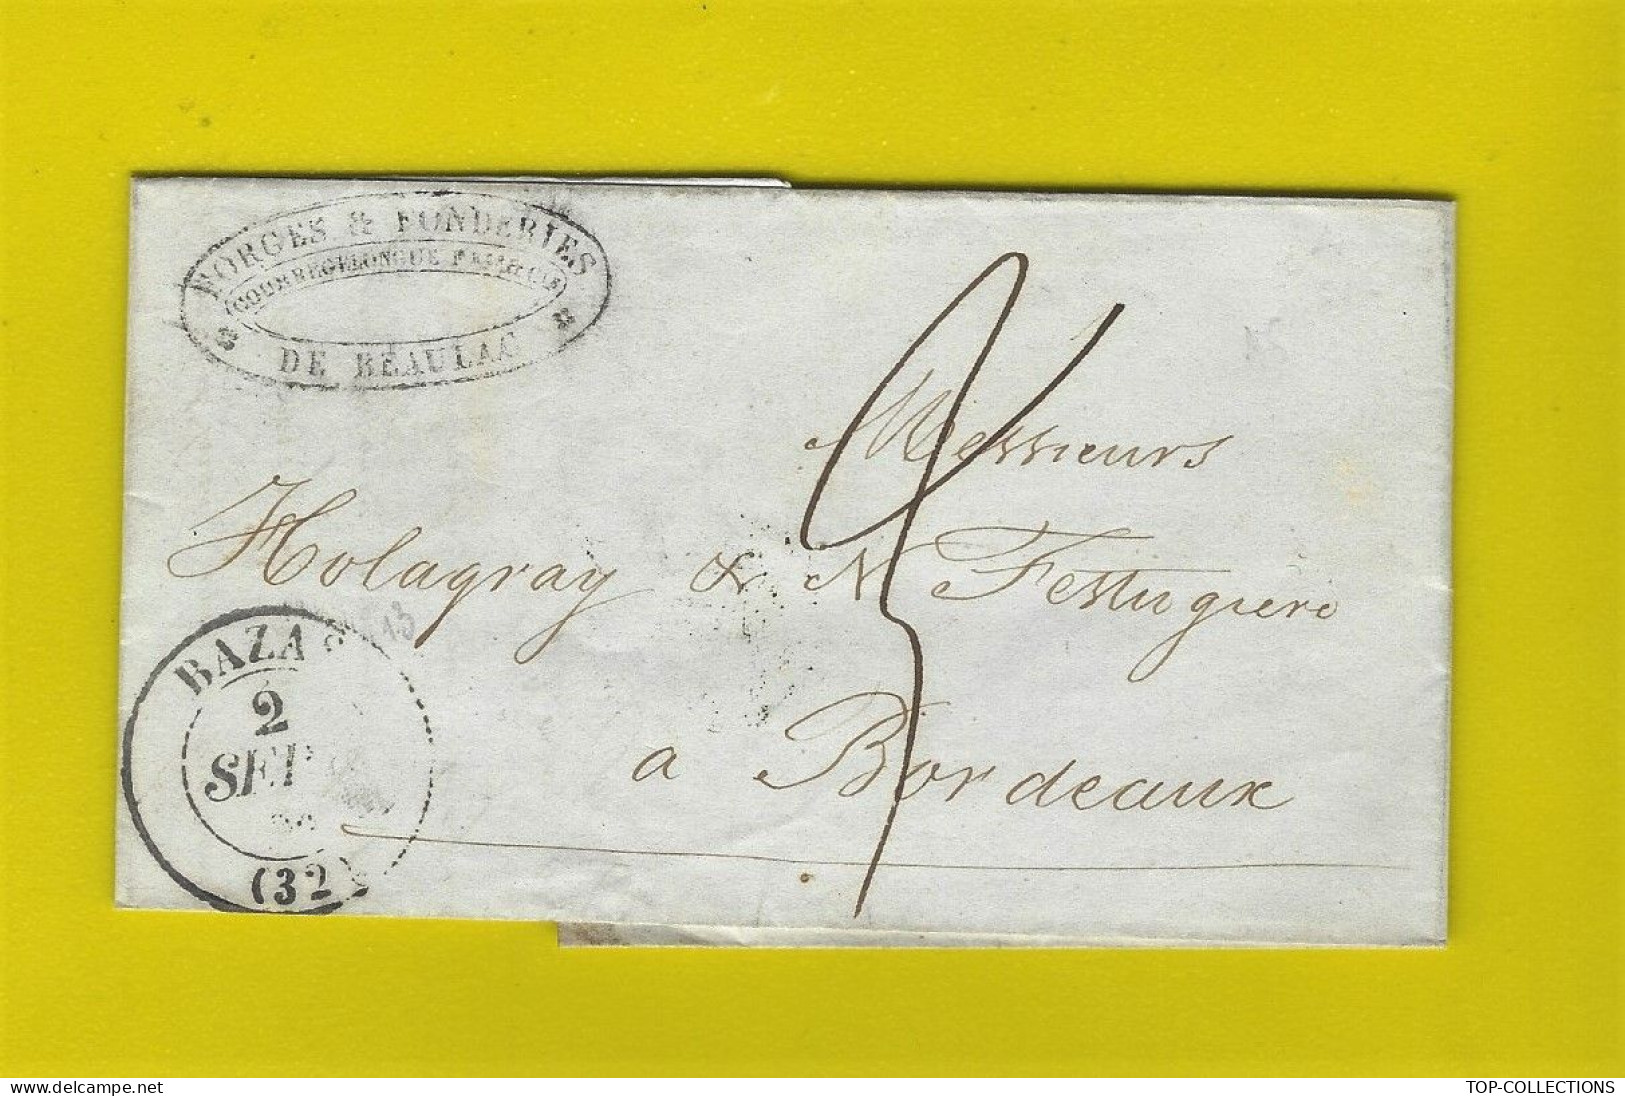 1843  LETTRE FORGES & FONDERIES de Beaulac  Gironde Courregelongue Frères Cachet Bazas pour Holagray Festugière Bordeaux